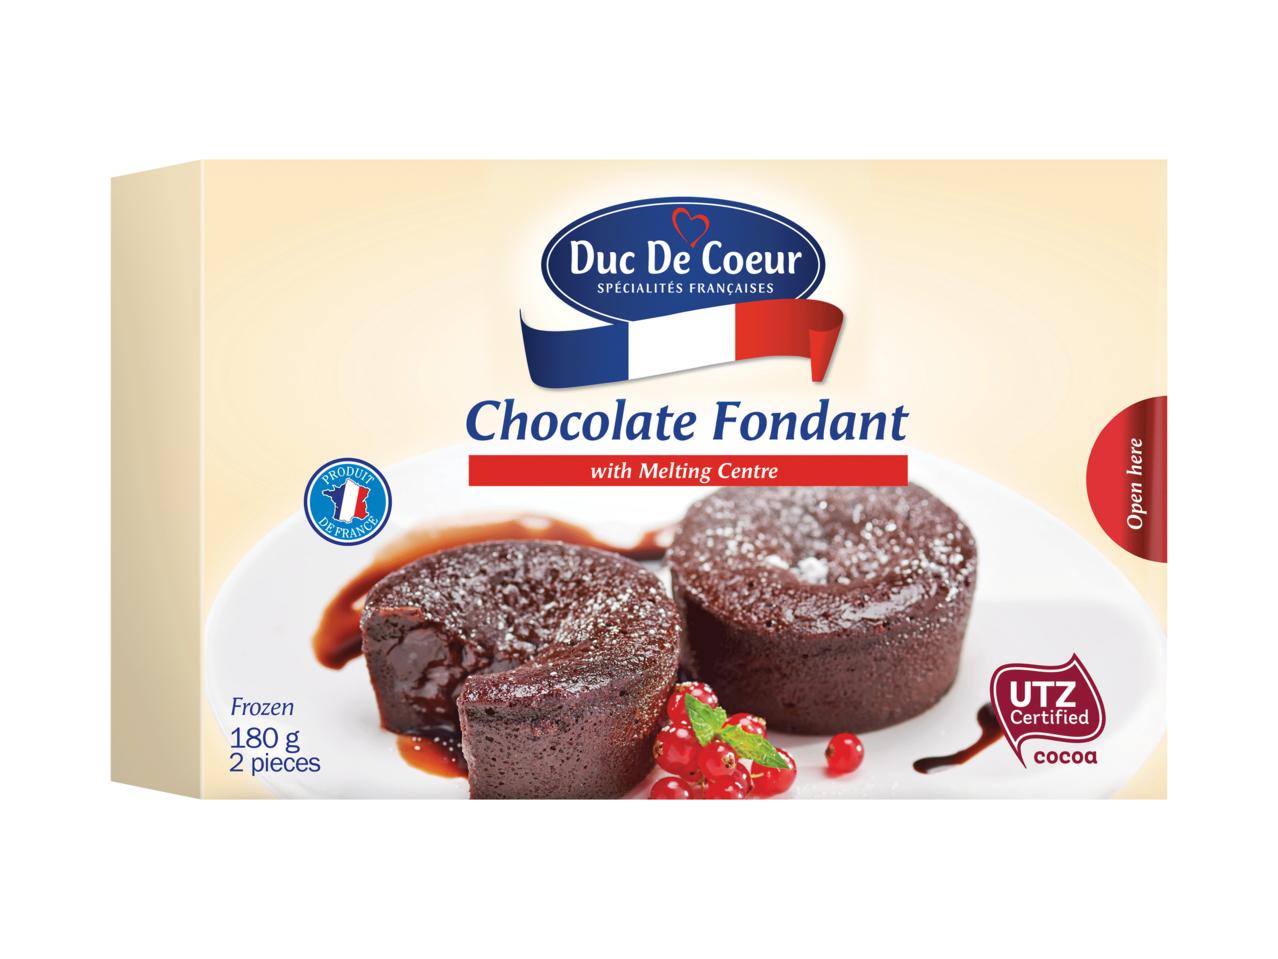 DUC DE COEUR Chocolate Fondant